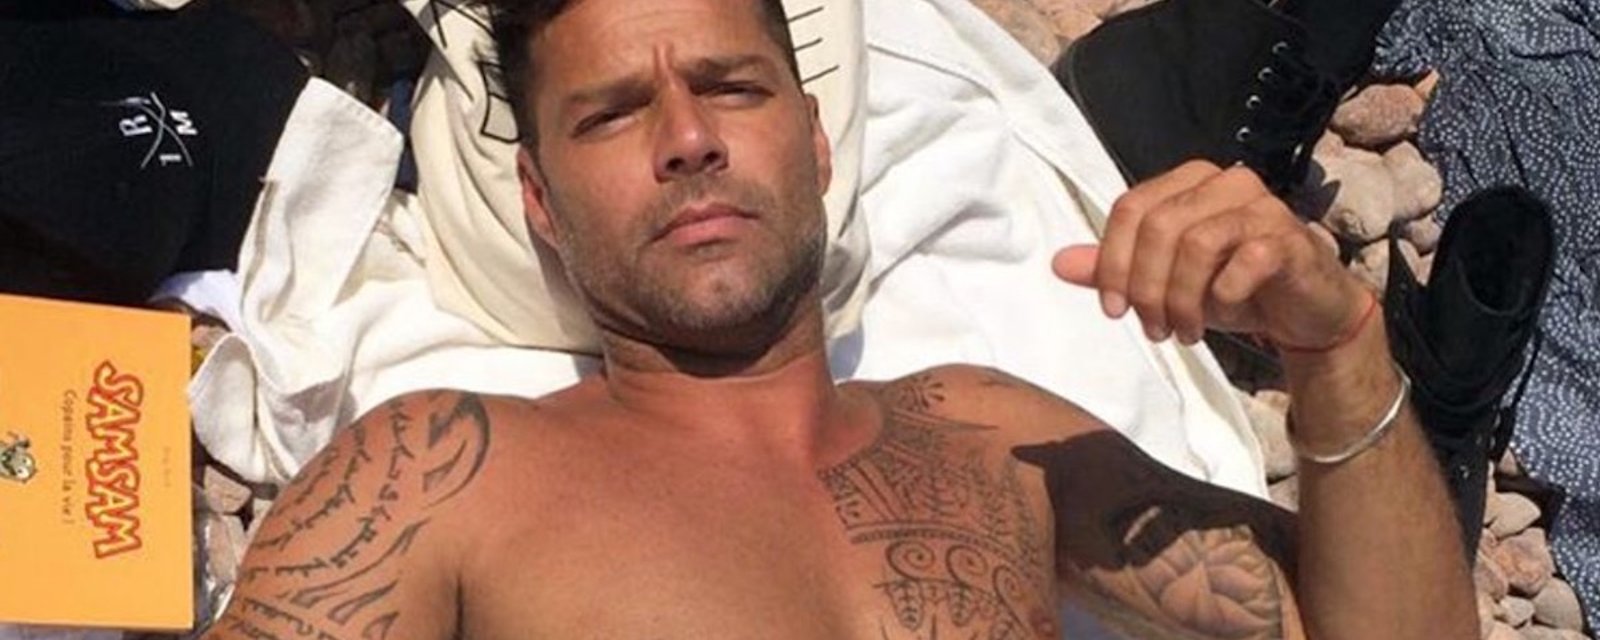 Le célèbre chanteur Ricky Martin est fiancé! 